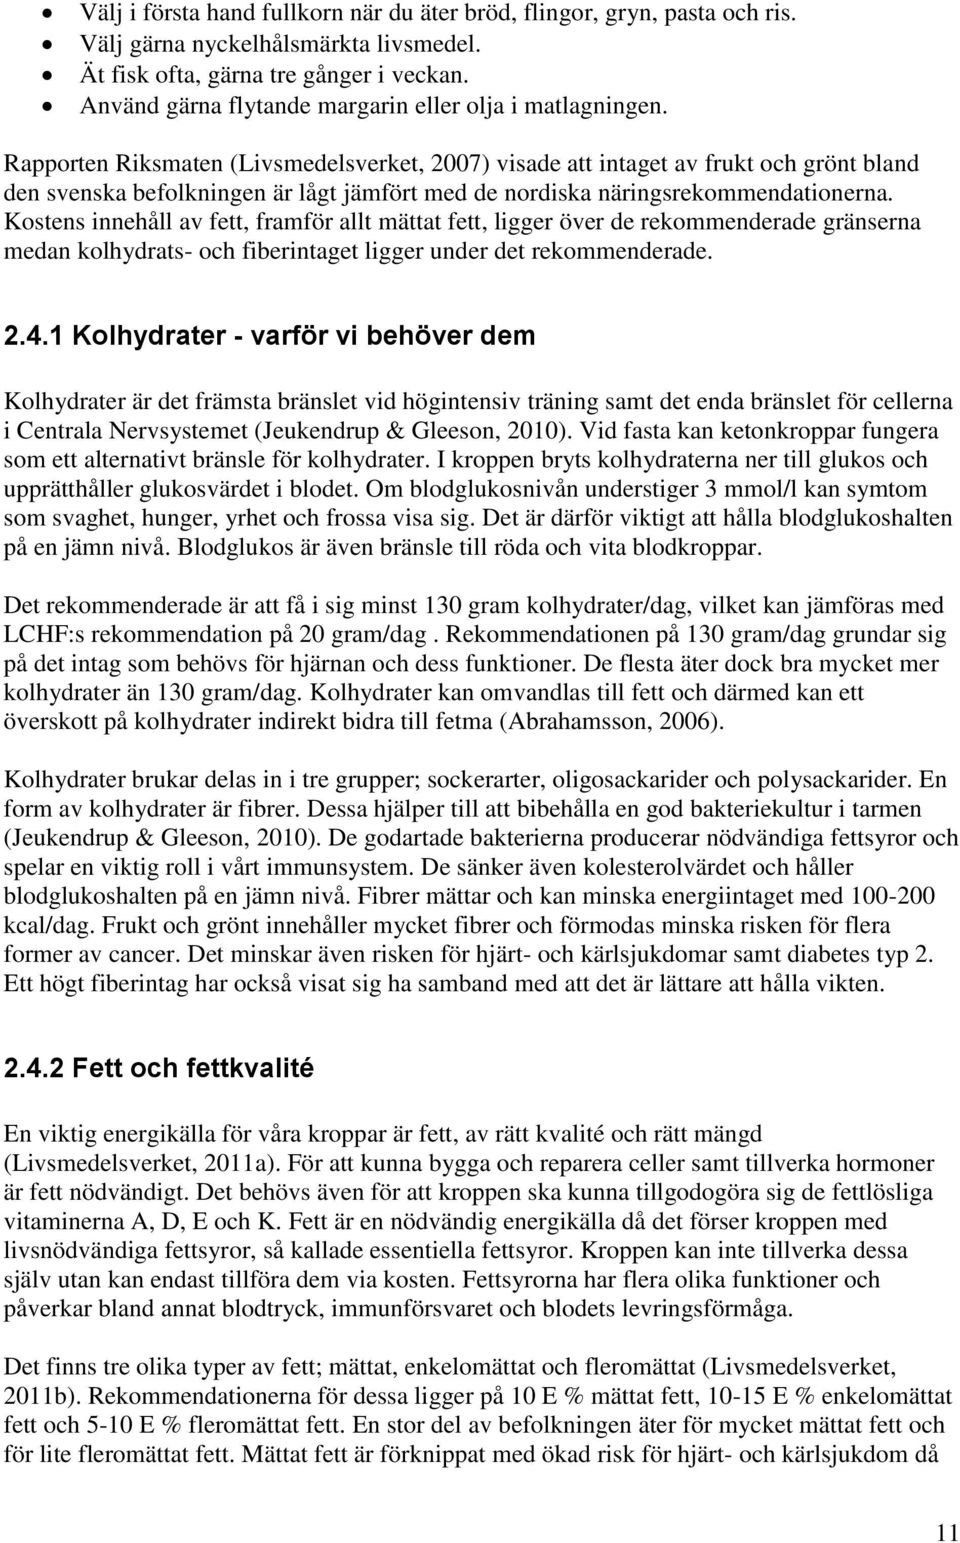 Rapporten Riksmaten (Livsmedelsverket, 2007) visade att intaget av frukt och grönt bland den svenska befolkningen är lågt jämfört med de nordiska näringsrekommendationerna.